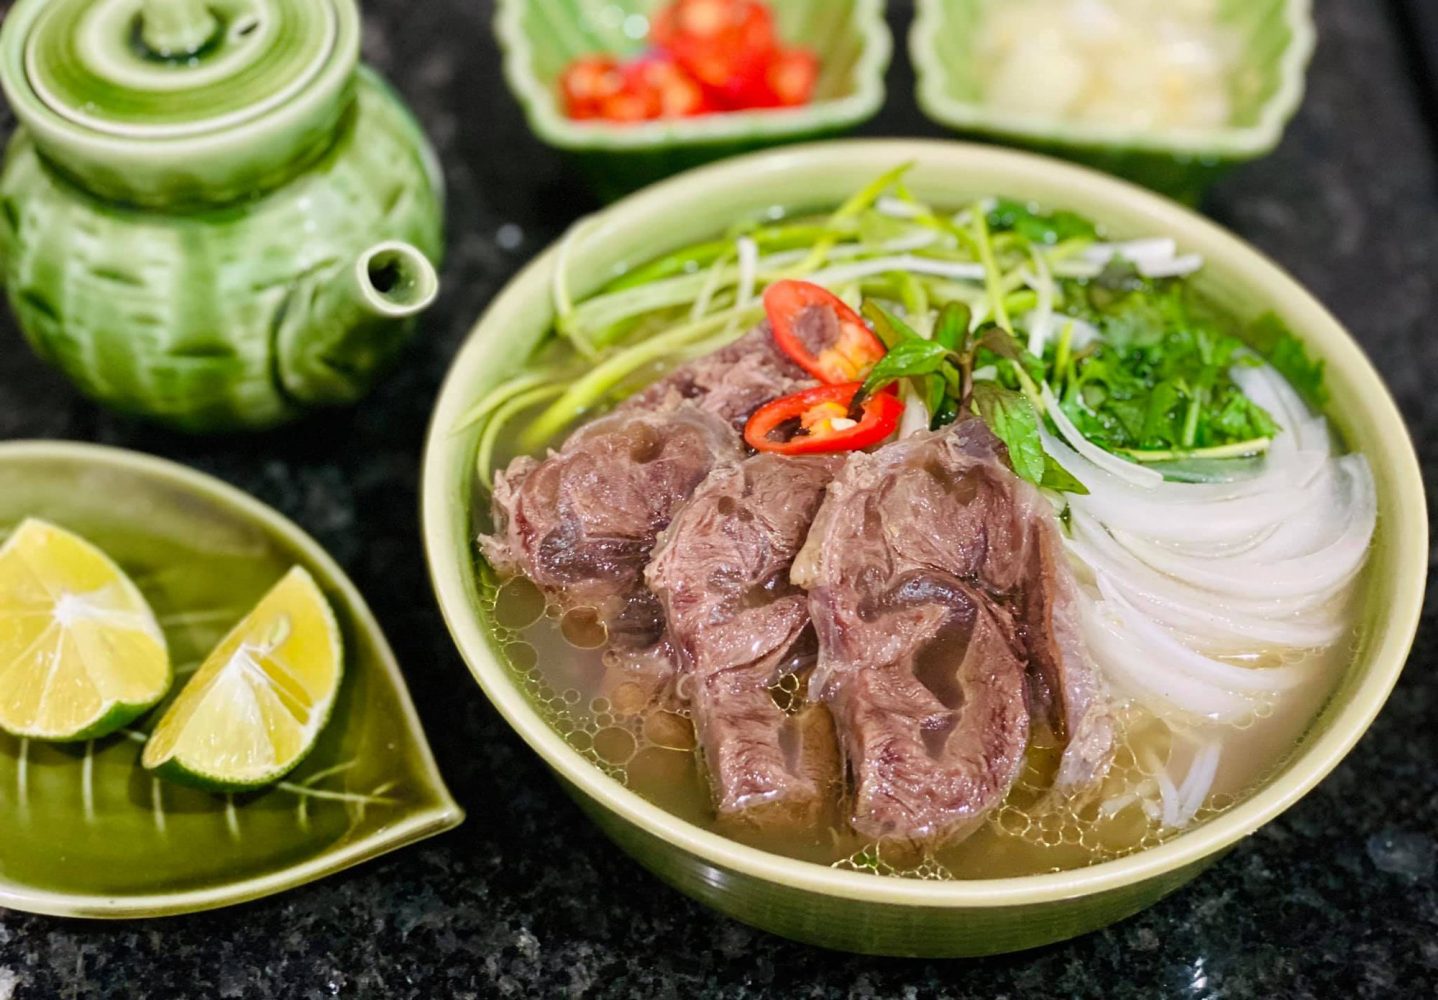 Trải nghiệm ẩm thực trứ danh: Kinh nghiệm du lịch Hà Nội